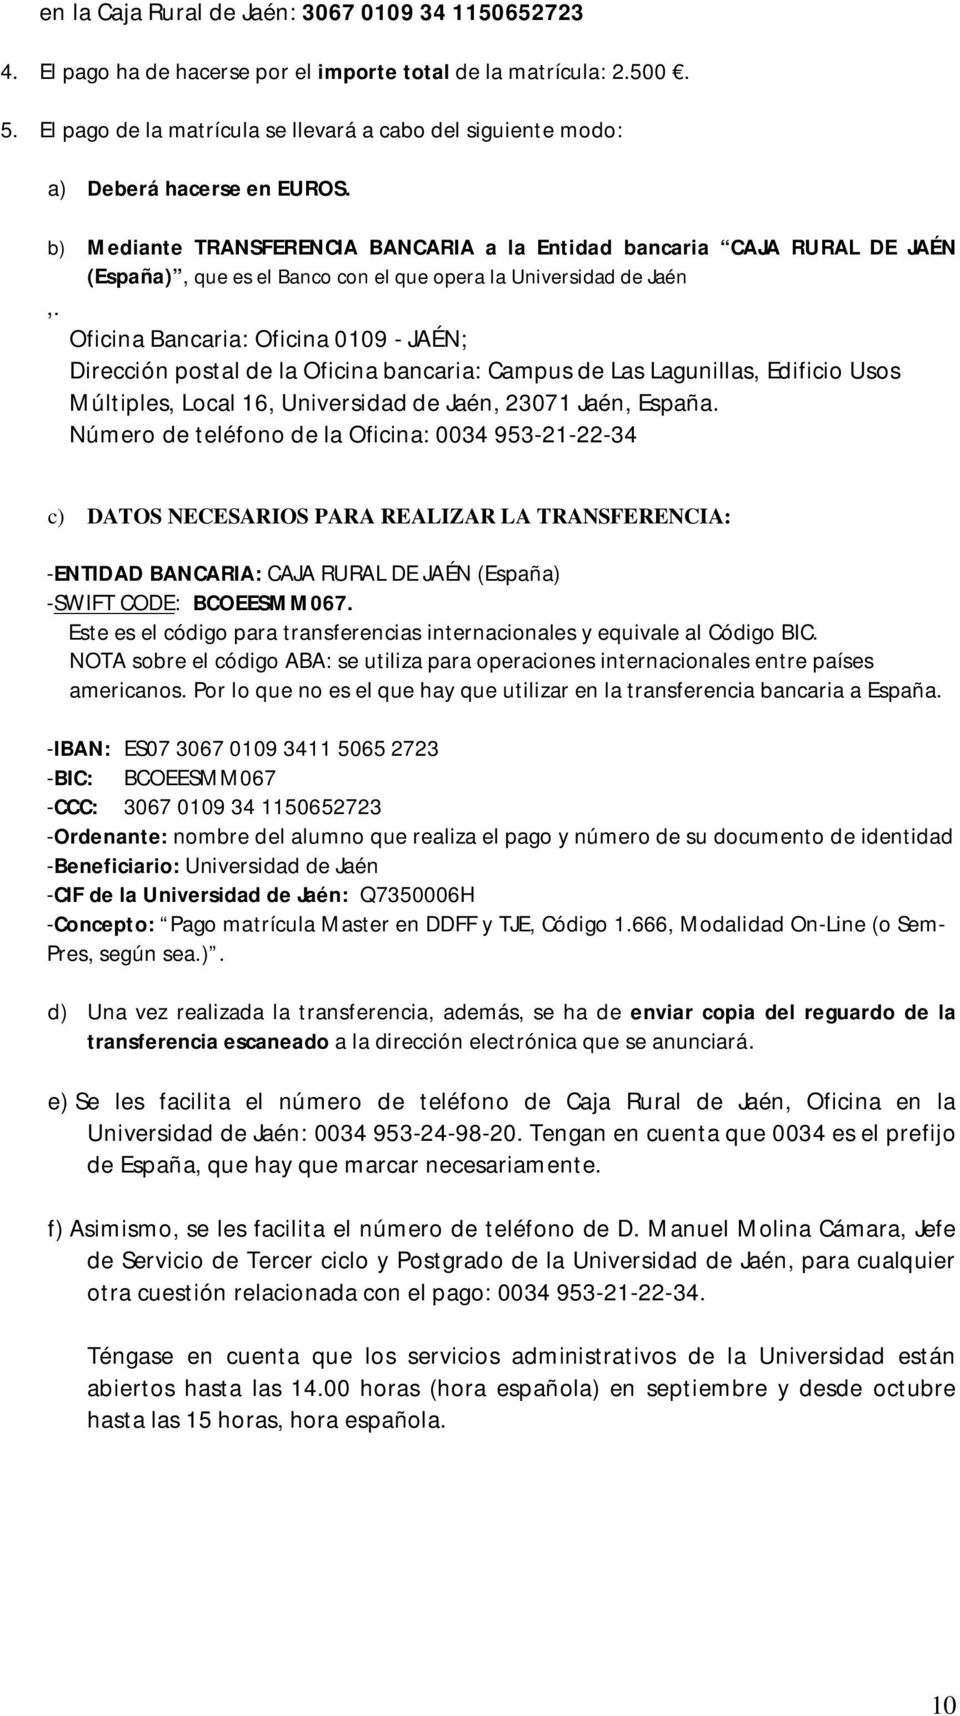 b) Mediante TRANSFERENCIA BANCARIA a la Entidad bancaria CAJA RURAL DE JAÉN (España), que es el Banco con el que opera la Universidad de Jaén,.